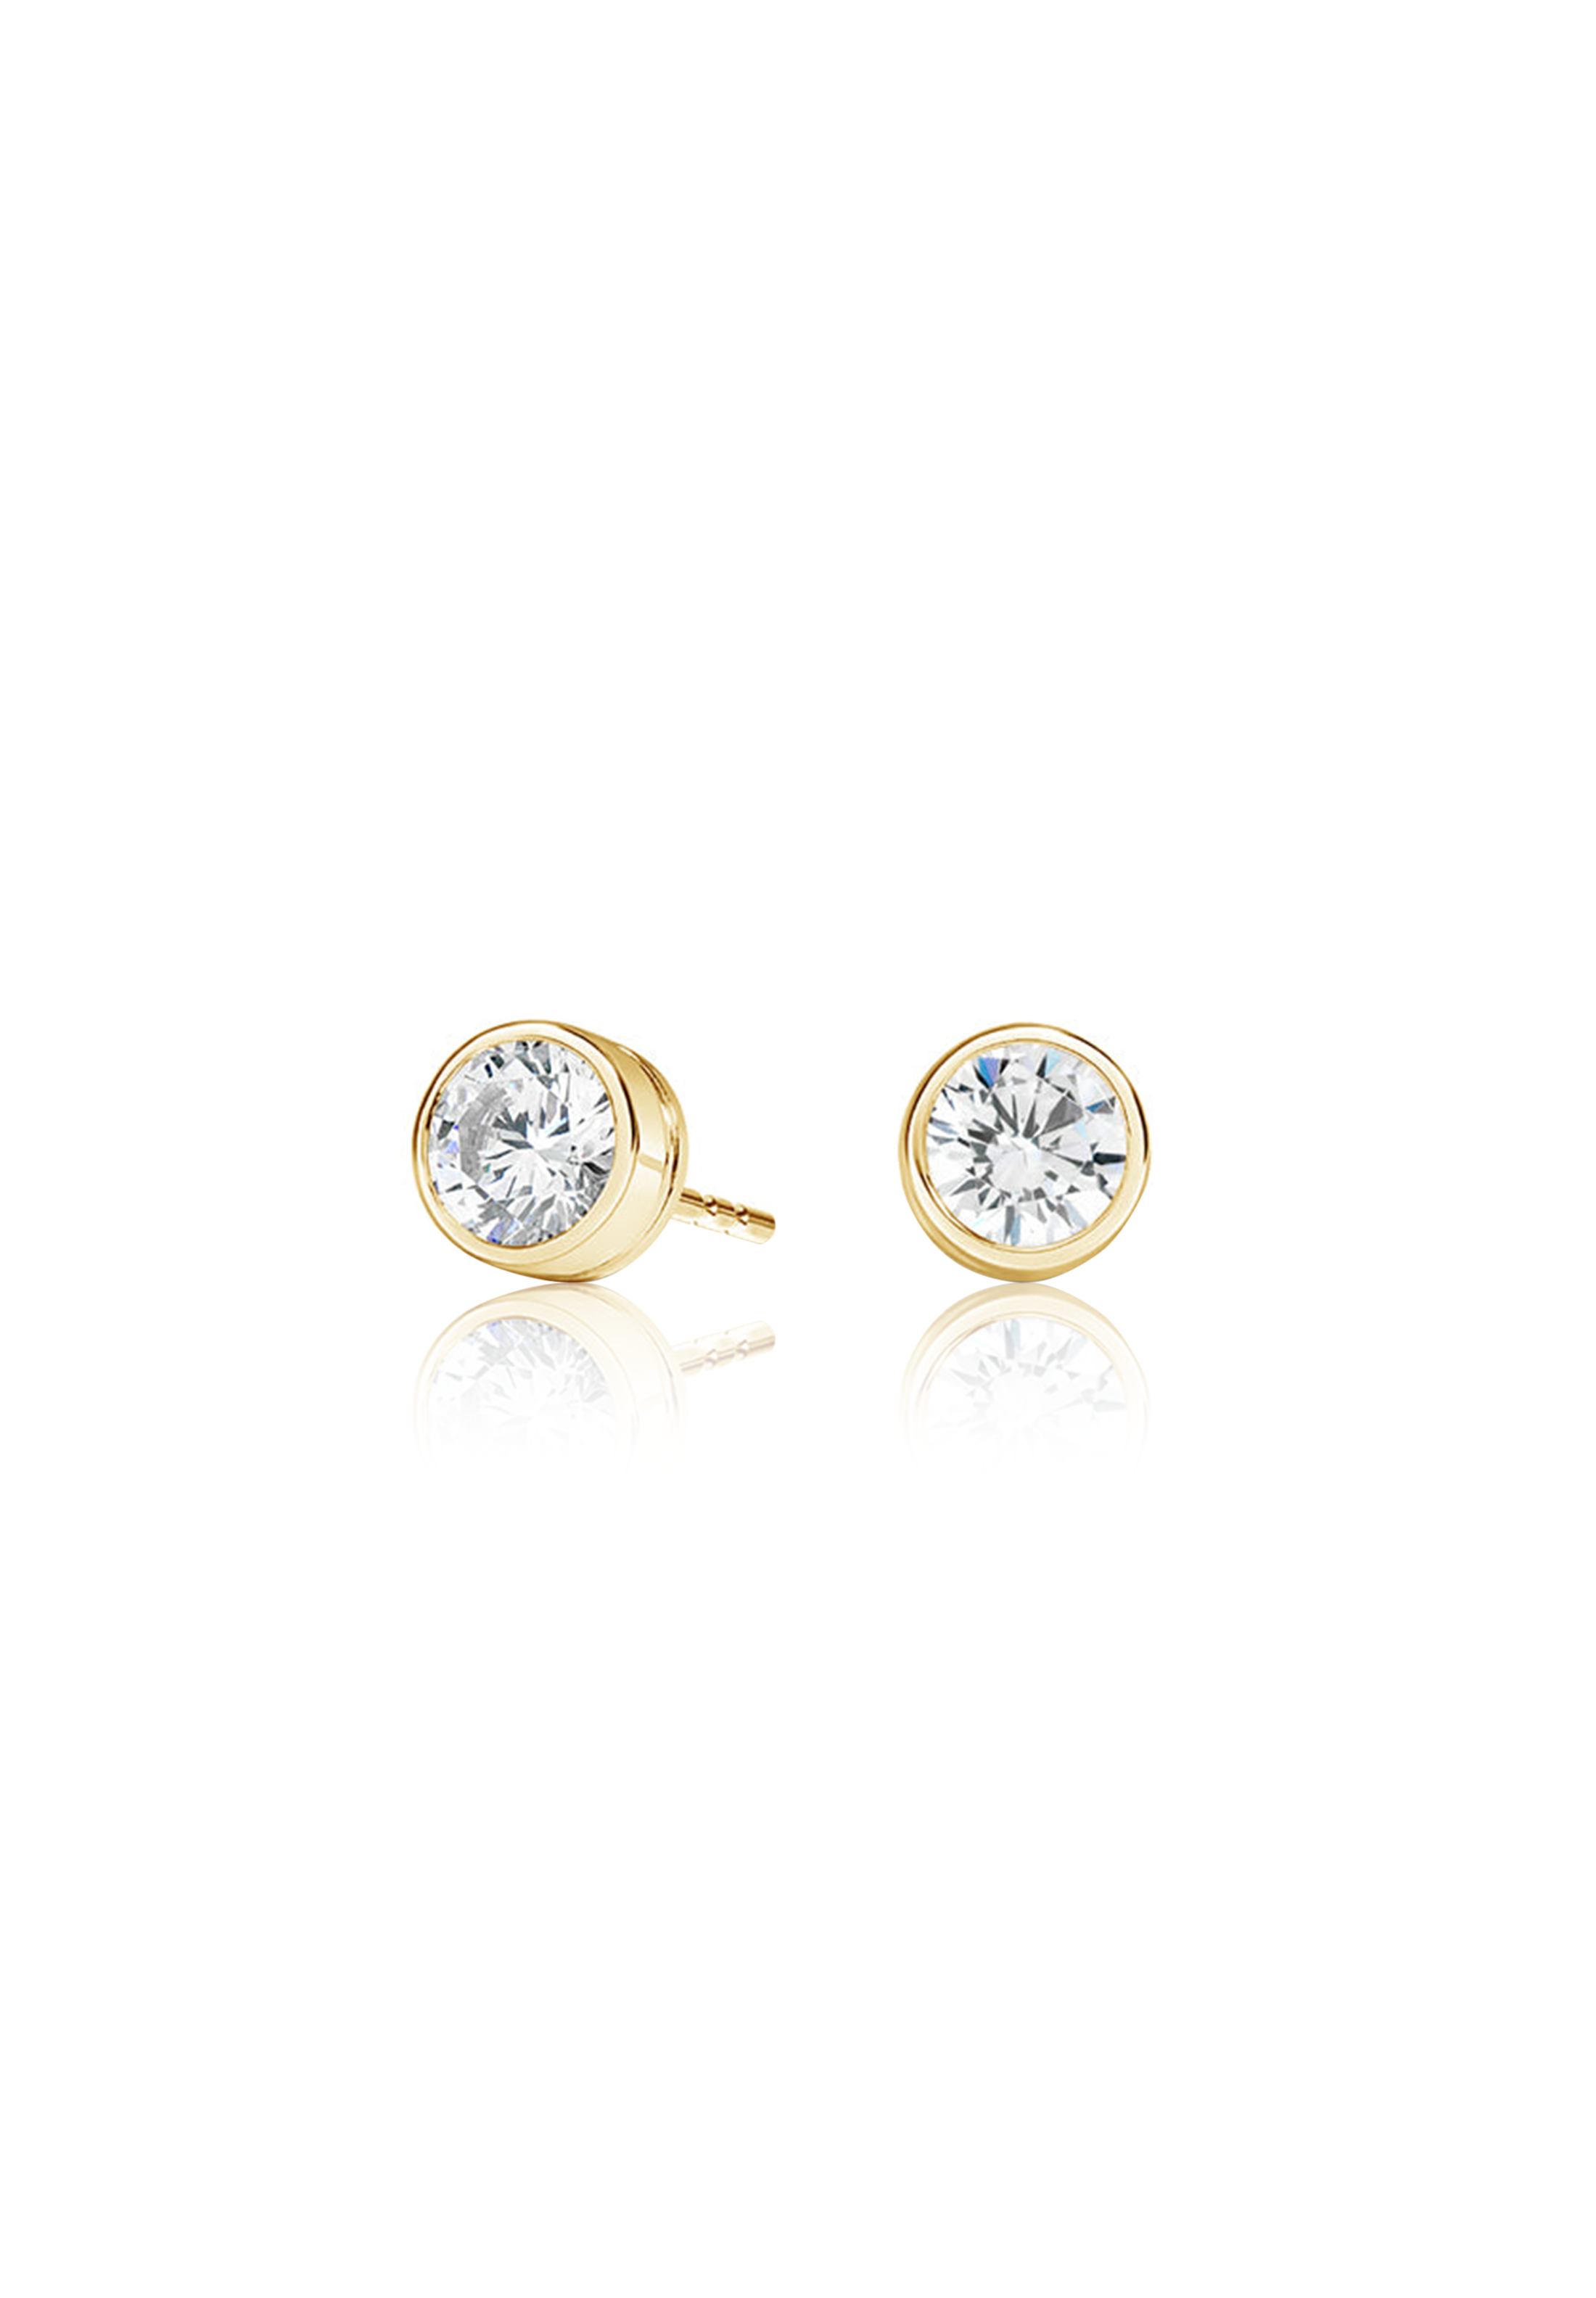 Round Cut Diamond Earrings 1.0 Carat (Bezel Set) - Fenom & Co.